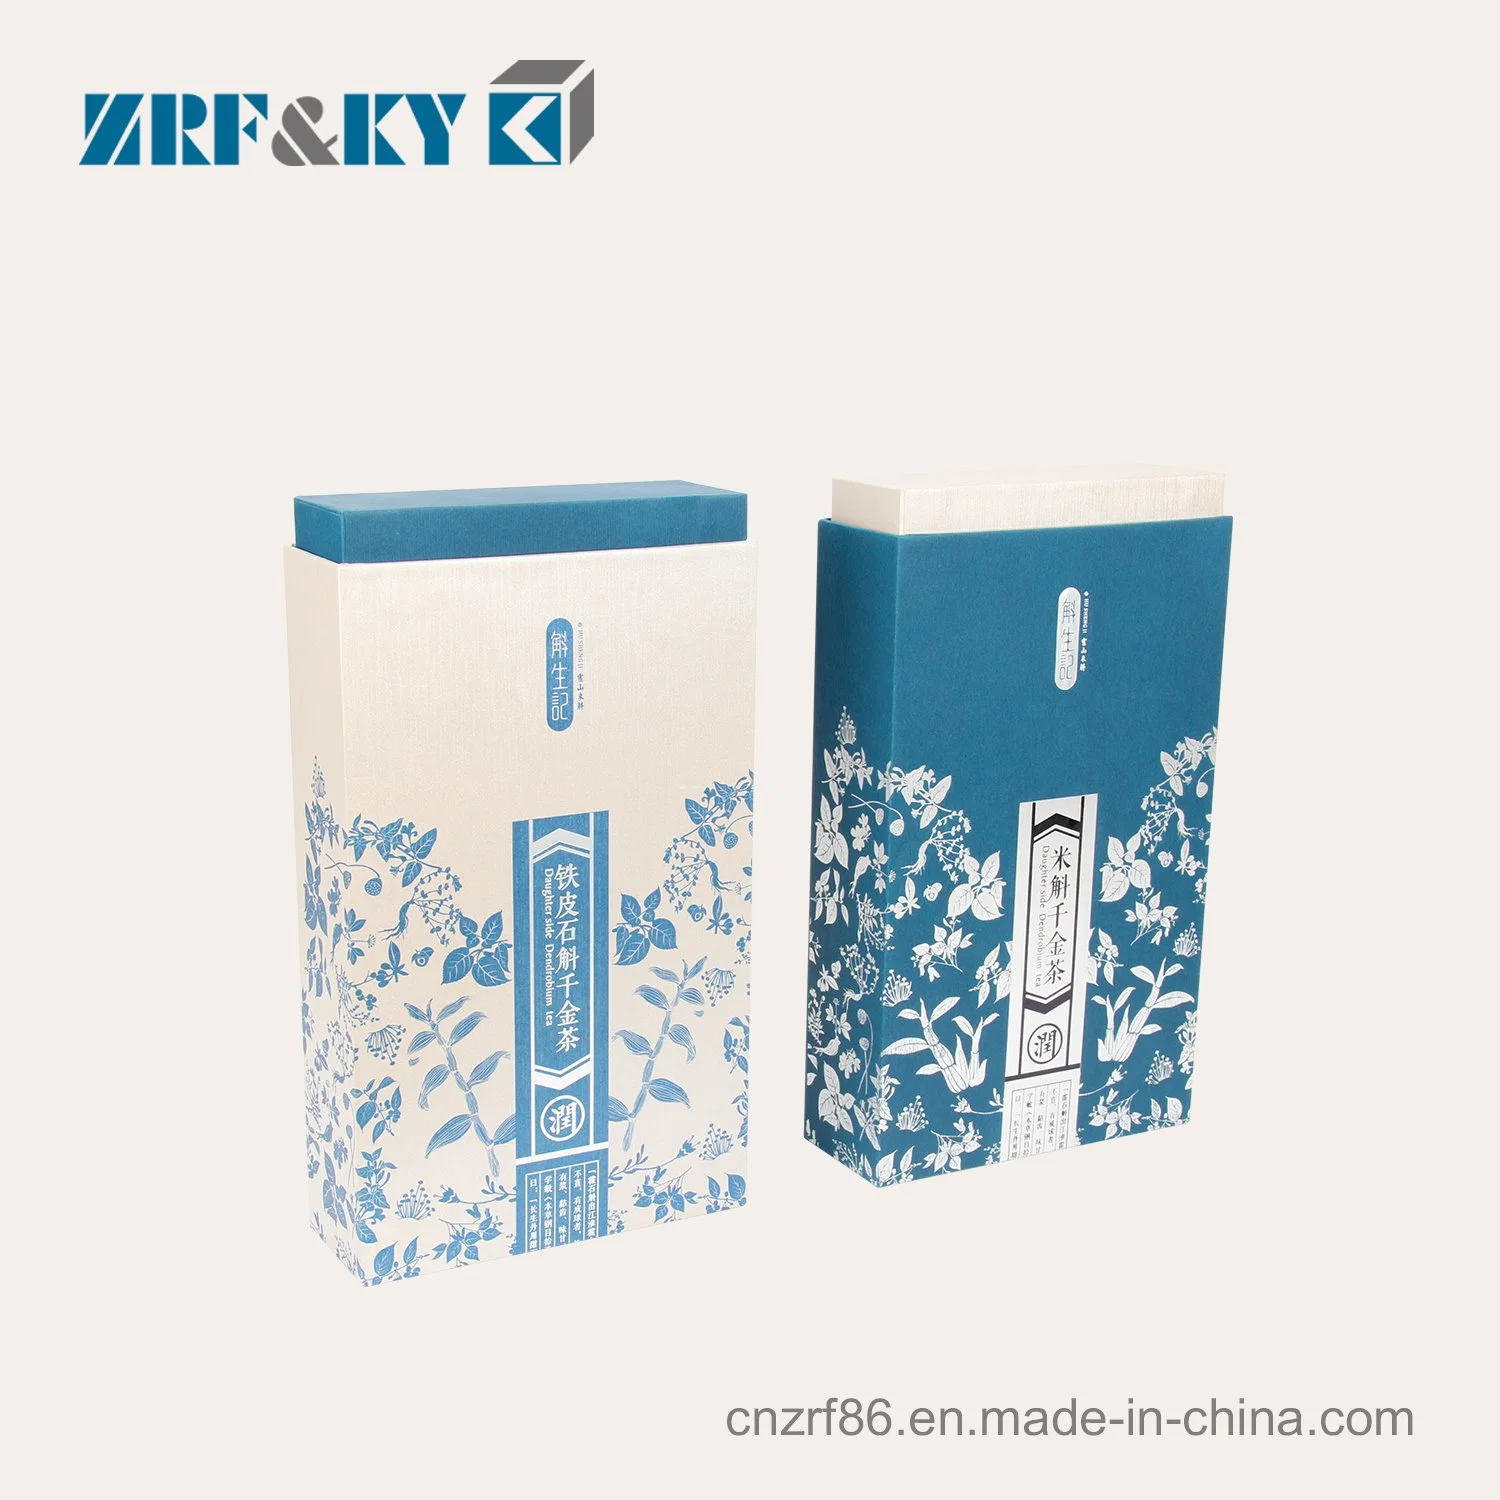 Оптовая торговля китайский цветочный чай в подарочной упаковке продукта для заботы о здоровье бумаги .